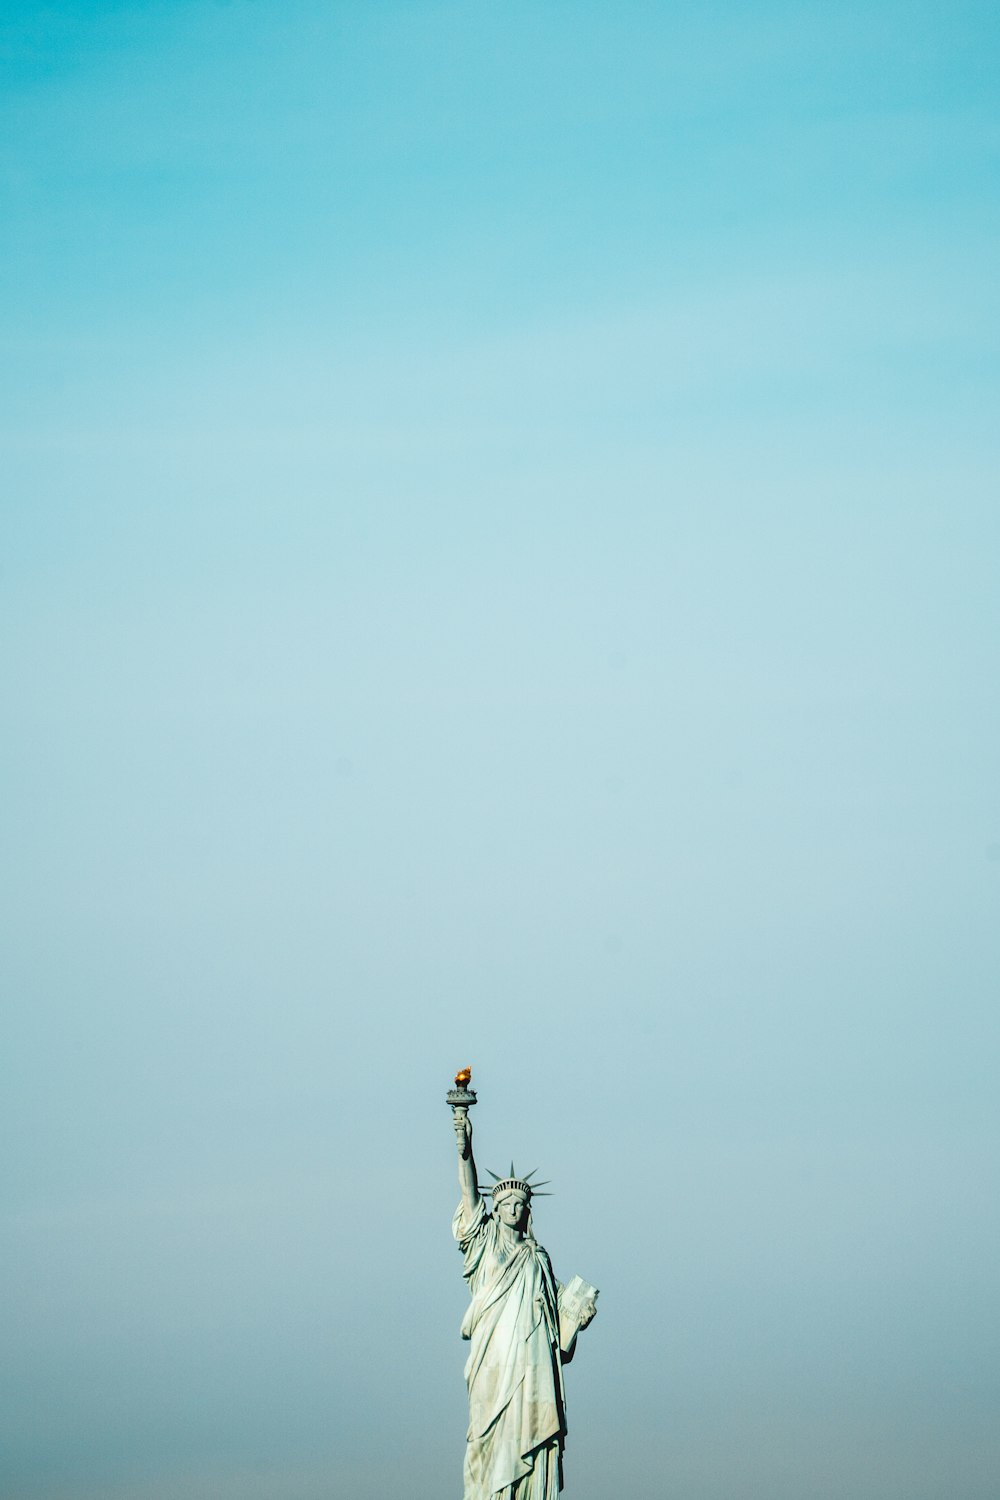 Statue de la Liberté, New York